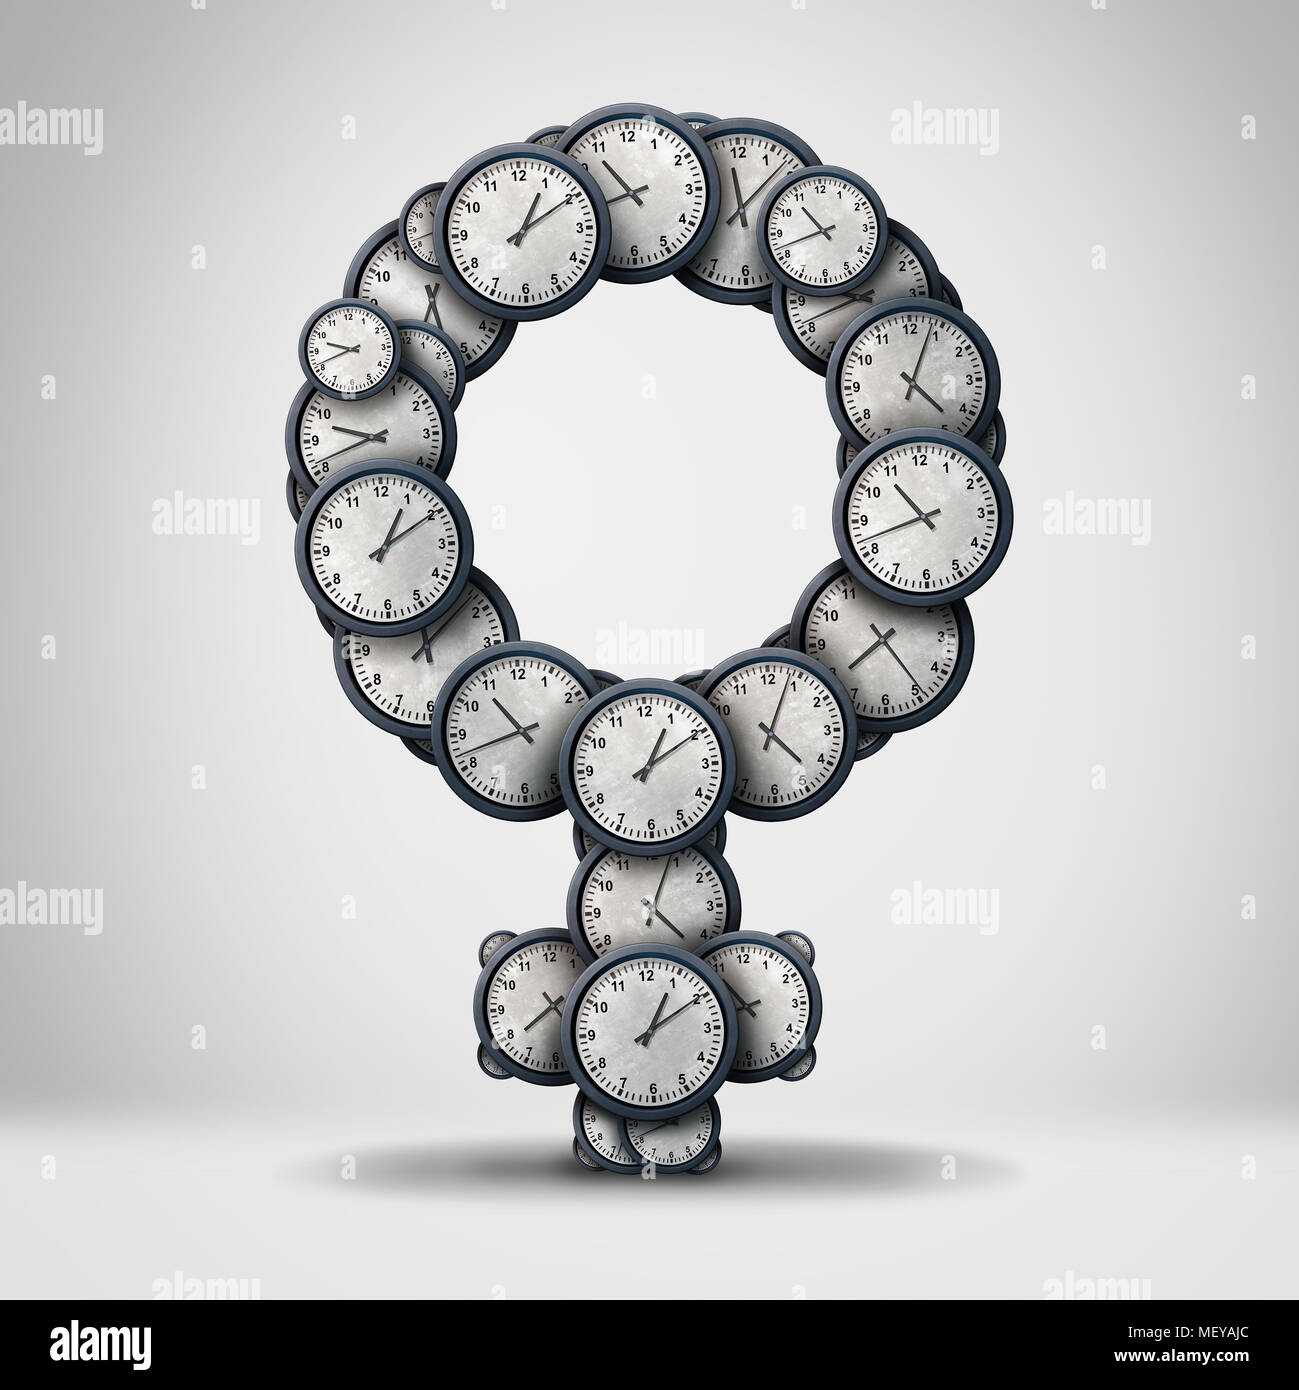 Las tasas de fecundidad de la mujer símbolo del reloj y tiempo biológico tictac concepto con un grupo de piezas del tiempo como una metáfora para el estrés de la edad reproductiva. Foto de stock